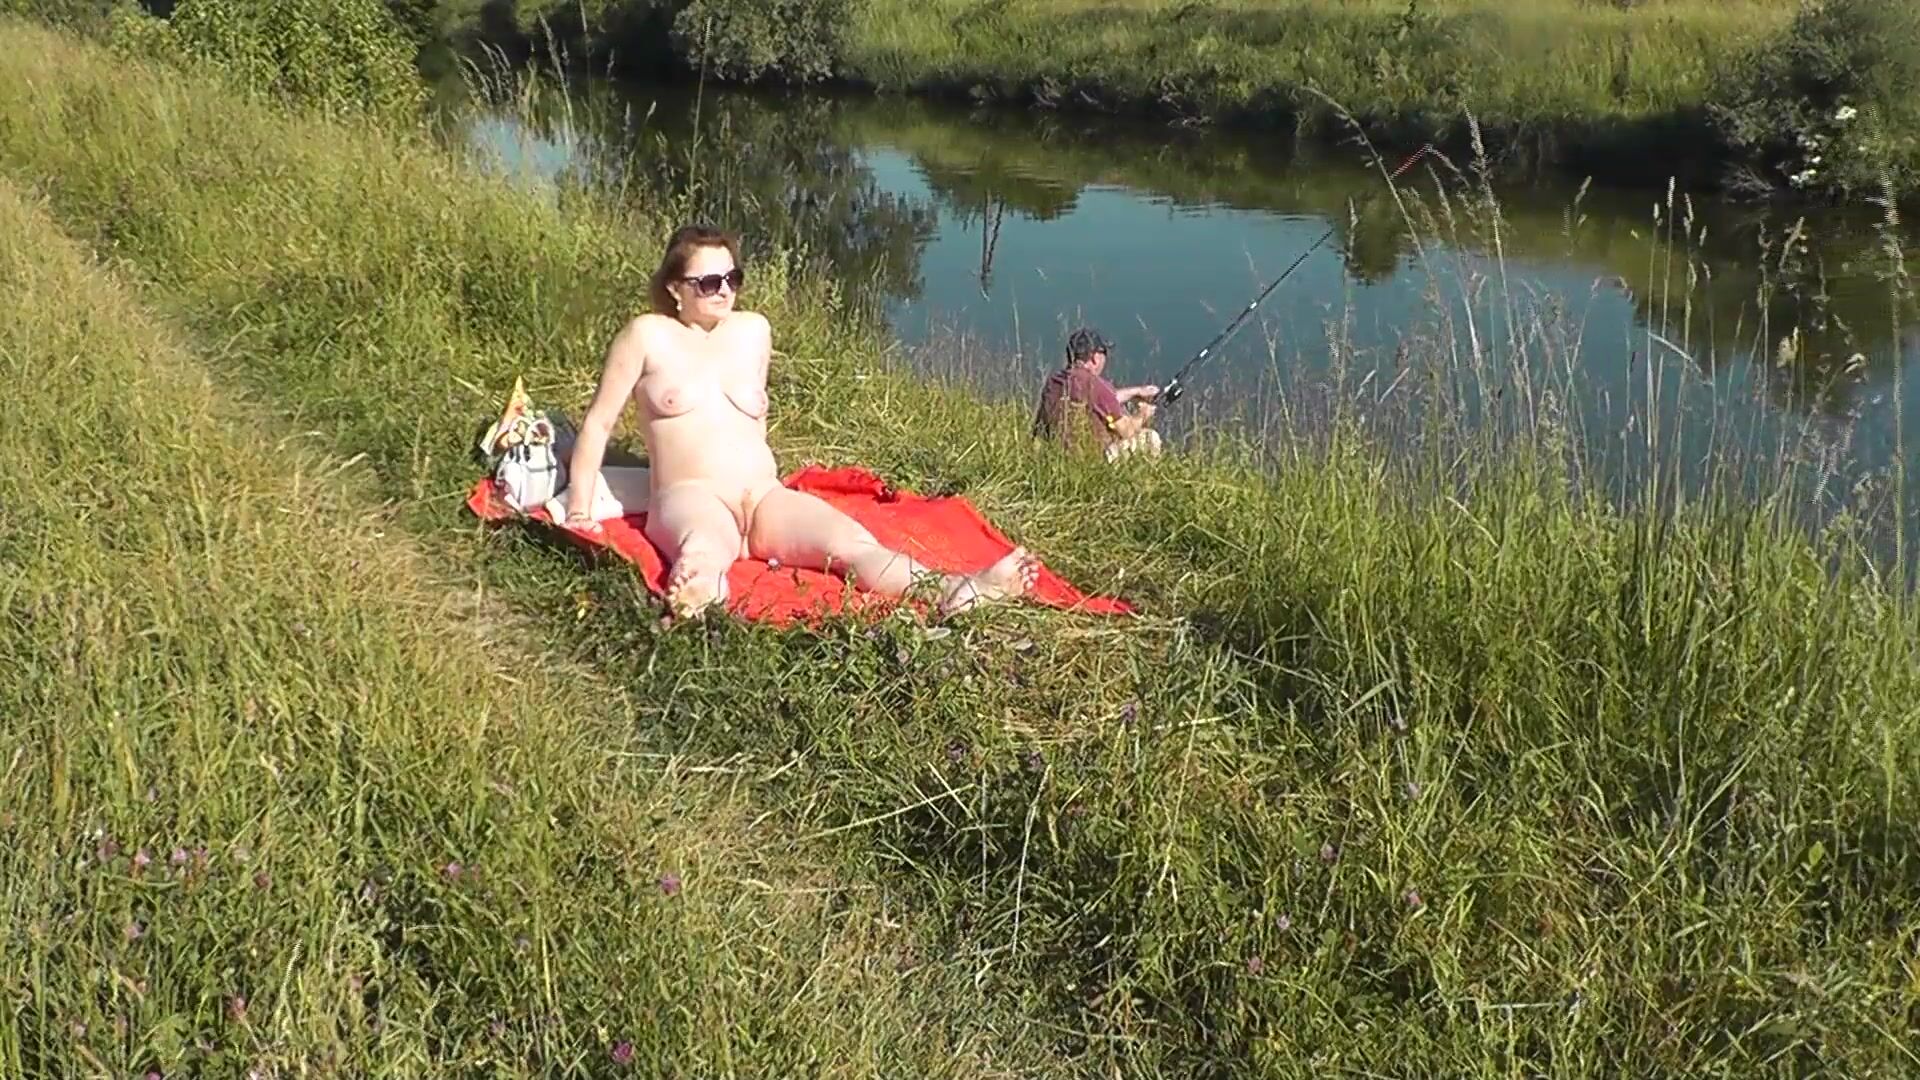 MILF sexy Frina am Flussufer entkleidet und sonnt sich nackt. Zufällige Mann Fischer beobachten für sie, und am Ende beschlossen, nackte Frau zu verbinden. Wilder Strand. Nudisten Strand